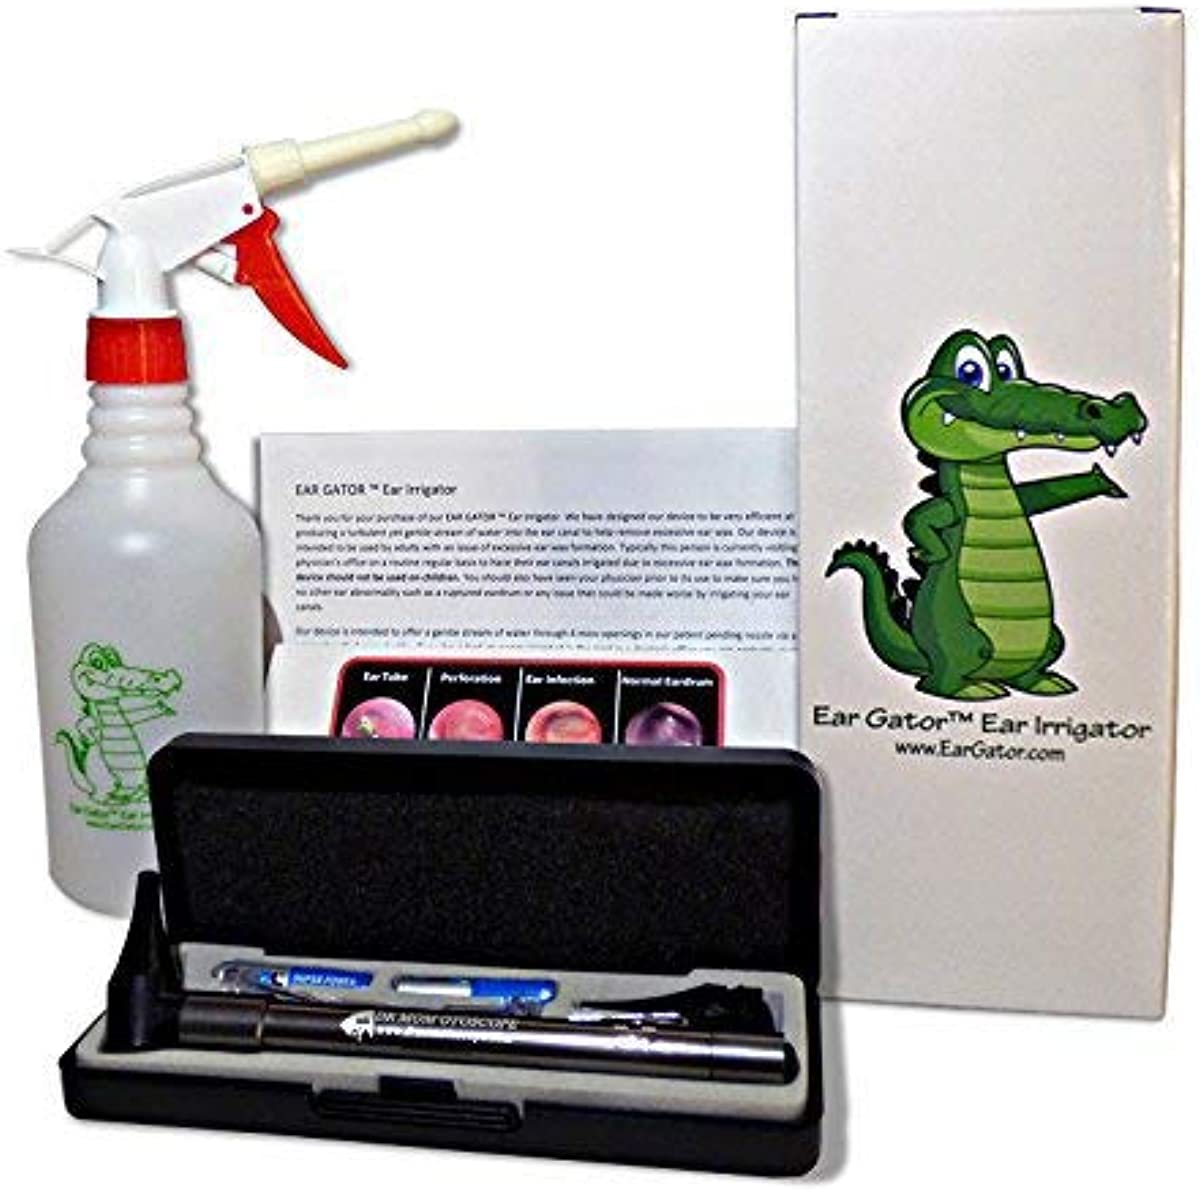 Soft Spray Ear Wax Removal Kit - Ear Gator Soft Spray Ear Irrigator (No Dizzy Spells) Plus Third Generation Dr Mom LED Otoscope Plus Lighted Ear CURETTES